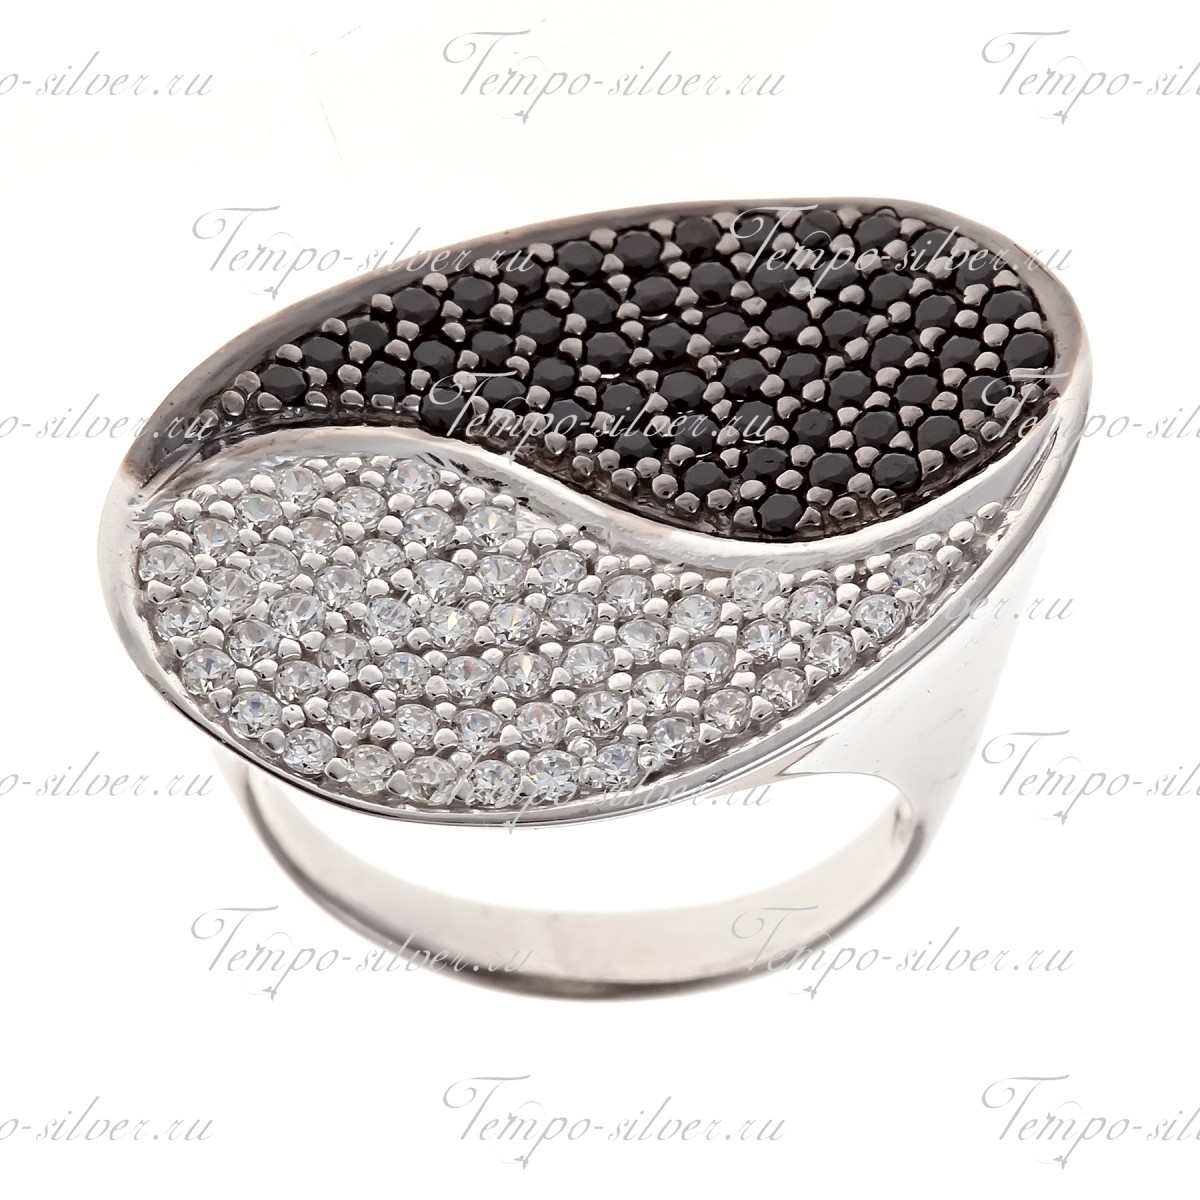 Кольцо из серебра с плоским овалом, украшенное черно-белыми камнями в стиле Инь - Янь